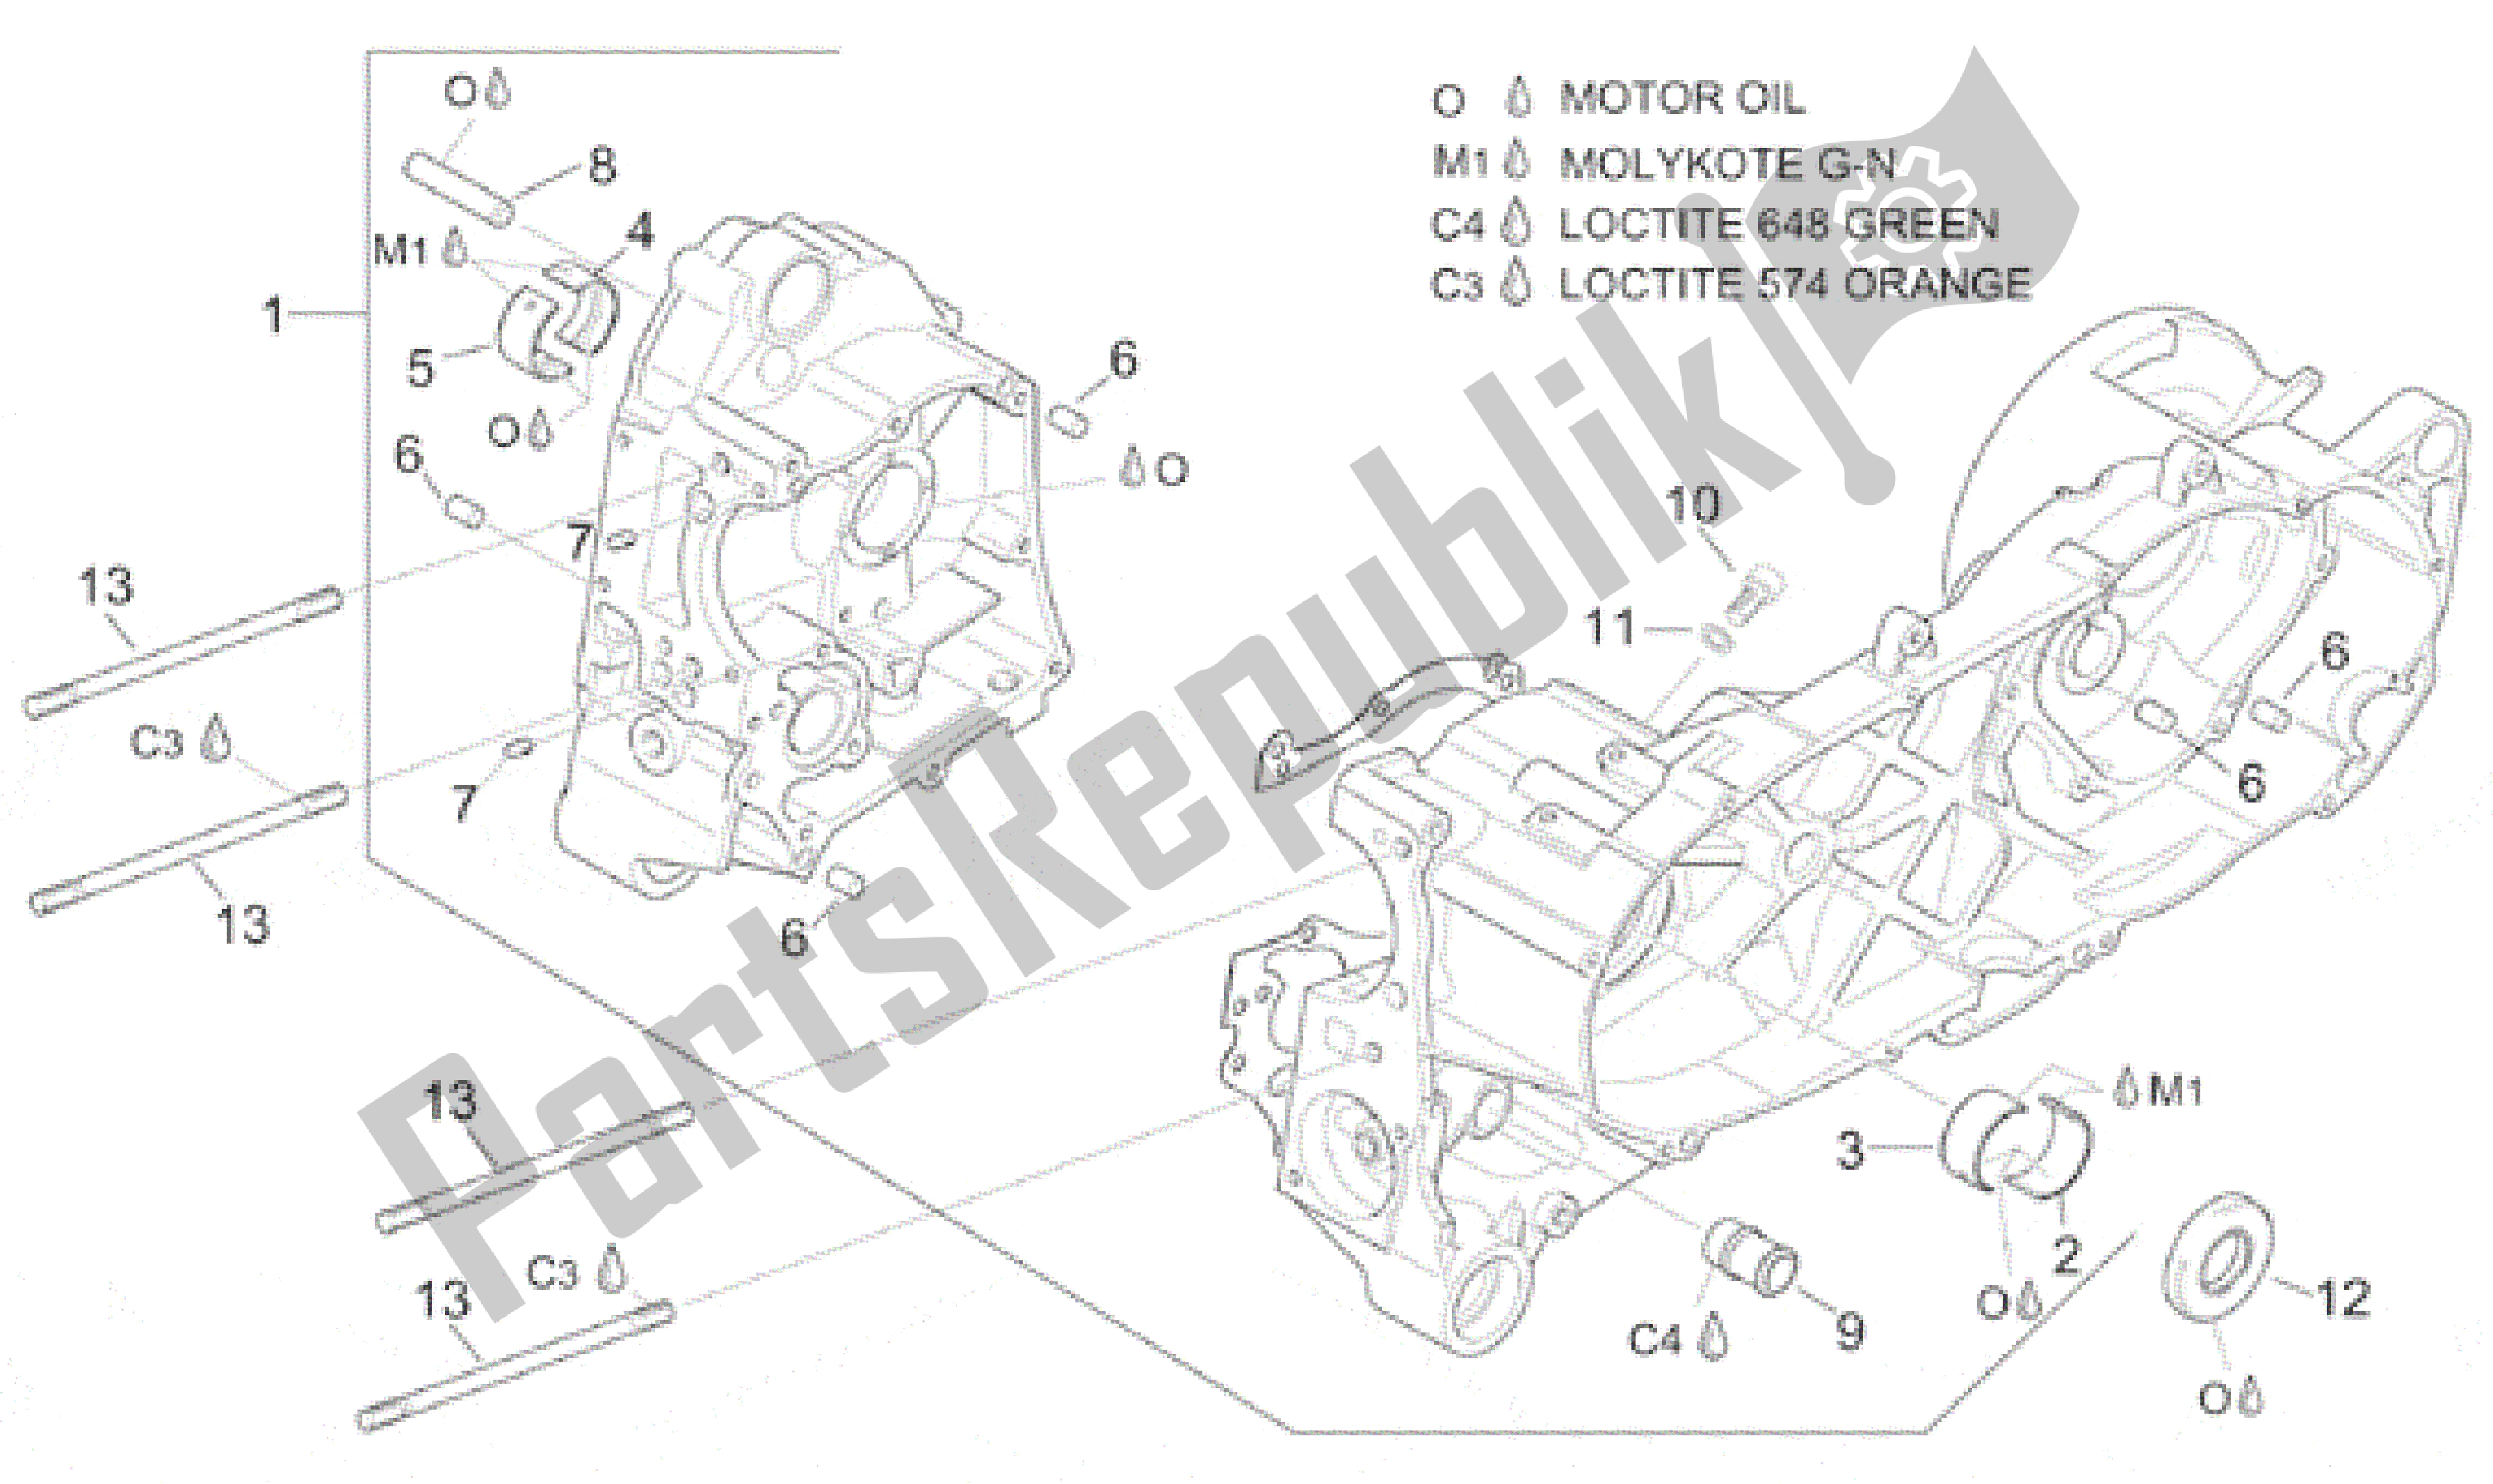 All parts for the Crankcase of the Aprilia Leonardo 150 1999 - 2001